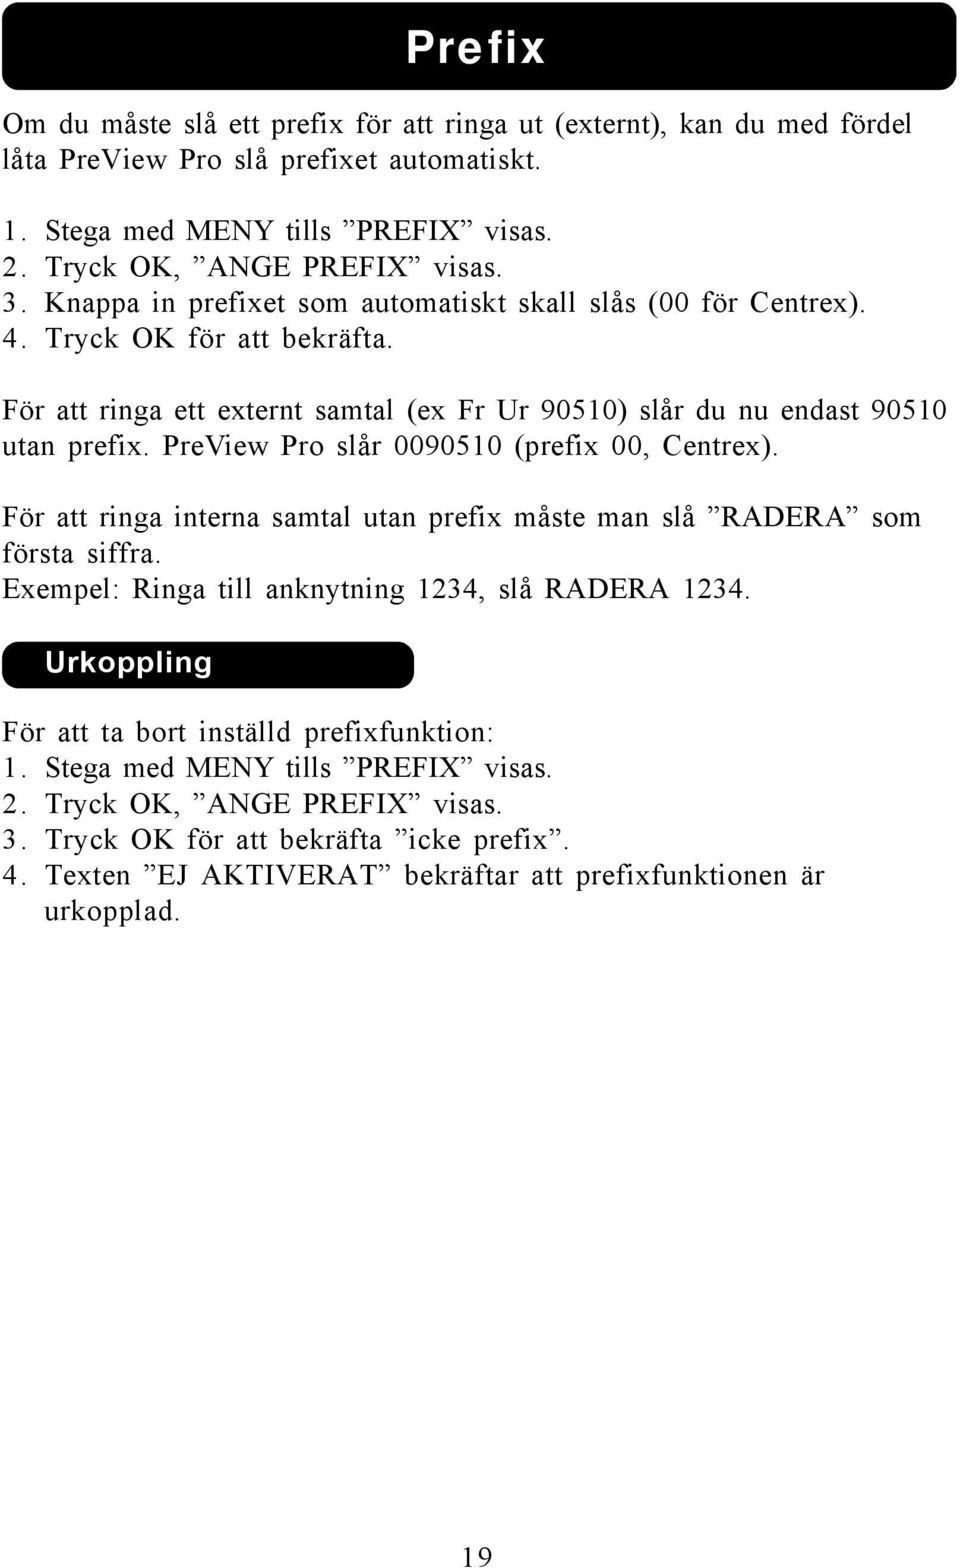 PreView Pro slår 0090510 (prefix 00, Centrex). För att ringa interna samtal utan prefix måste man slå RADERA som första siffra. Exempel: Ringa till anknytning 1234, slå RADERA 1234.